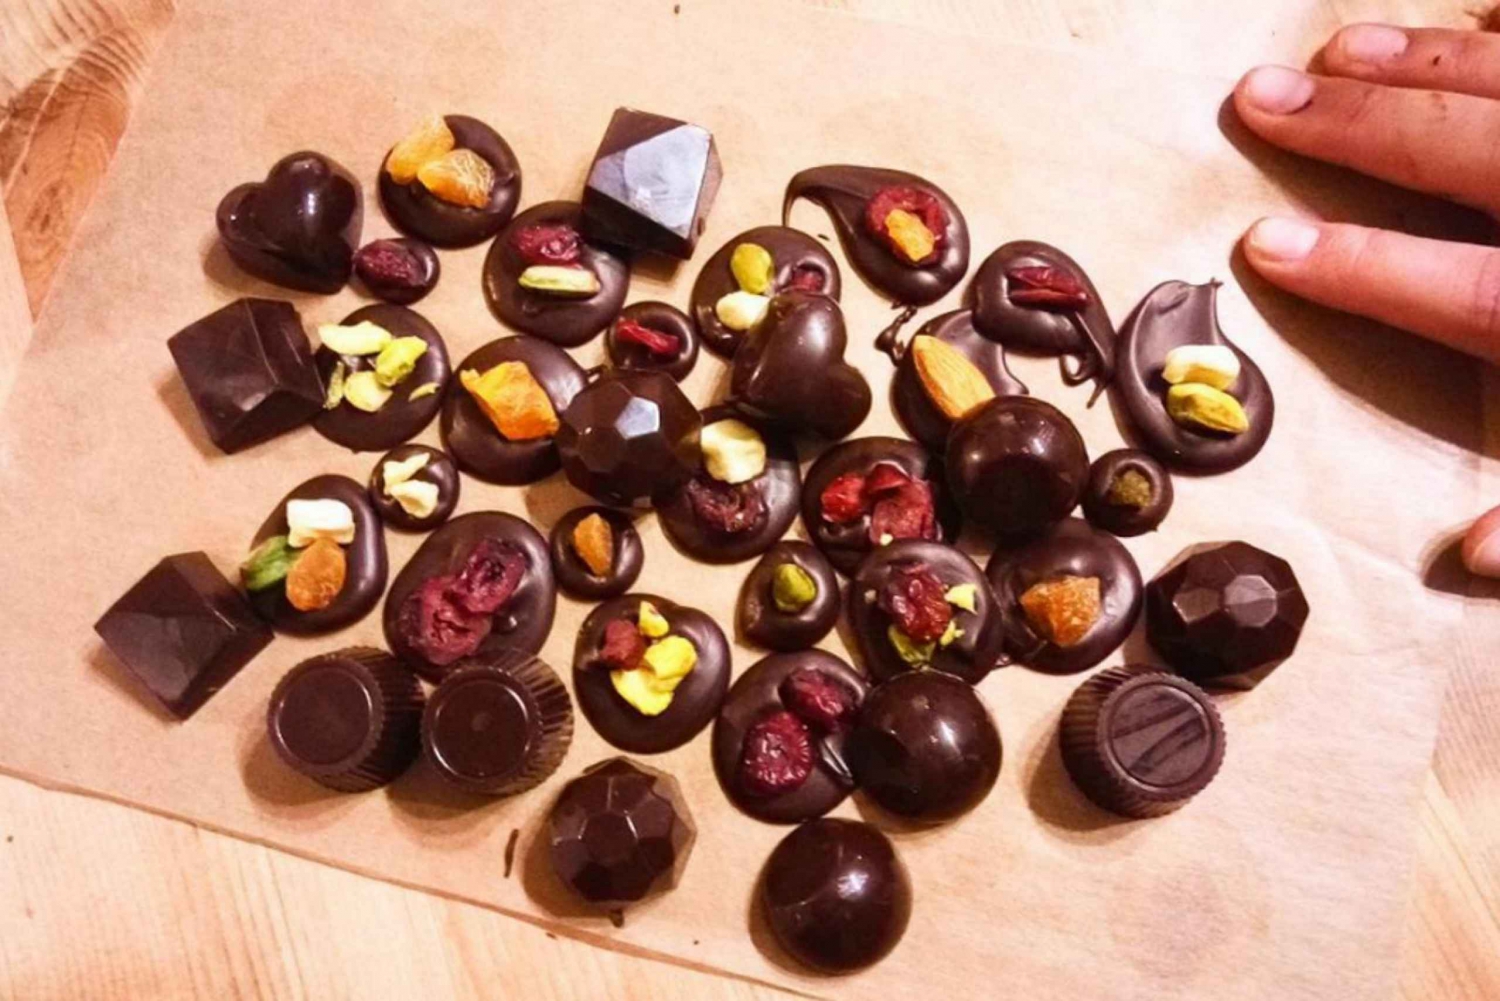 Bruksela: 2,5-godzinne belgijskie warsztaty robienia czekolady